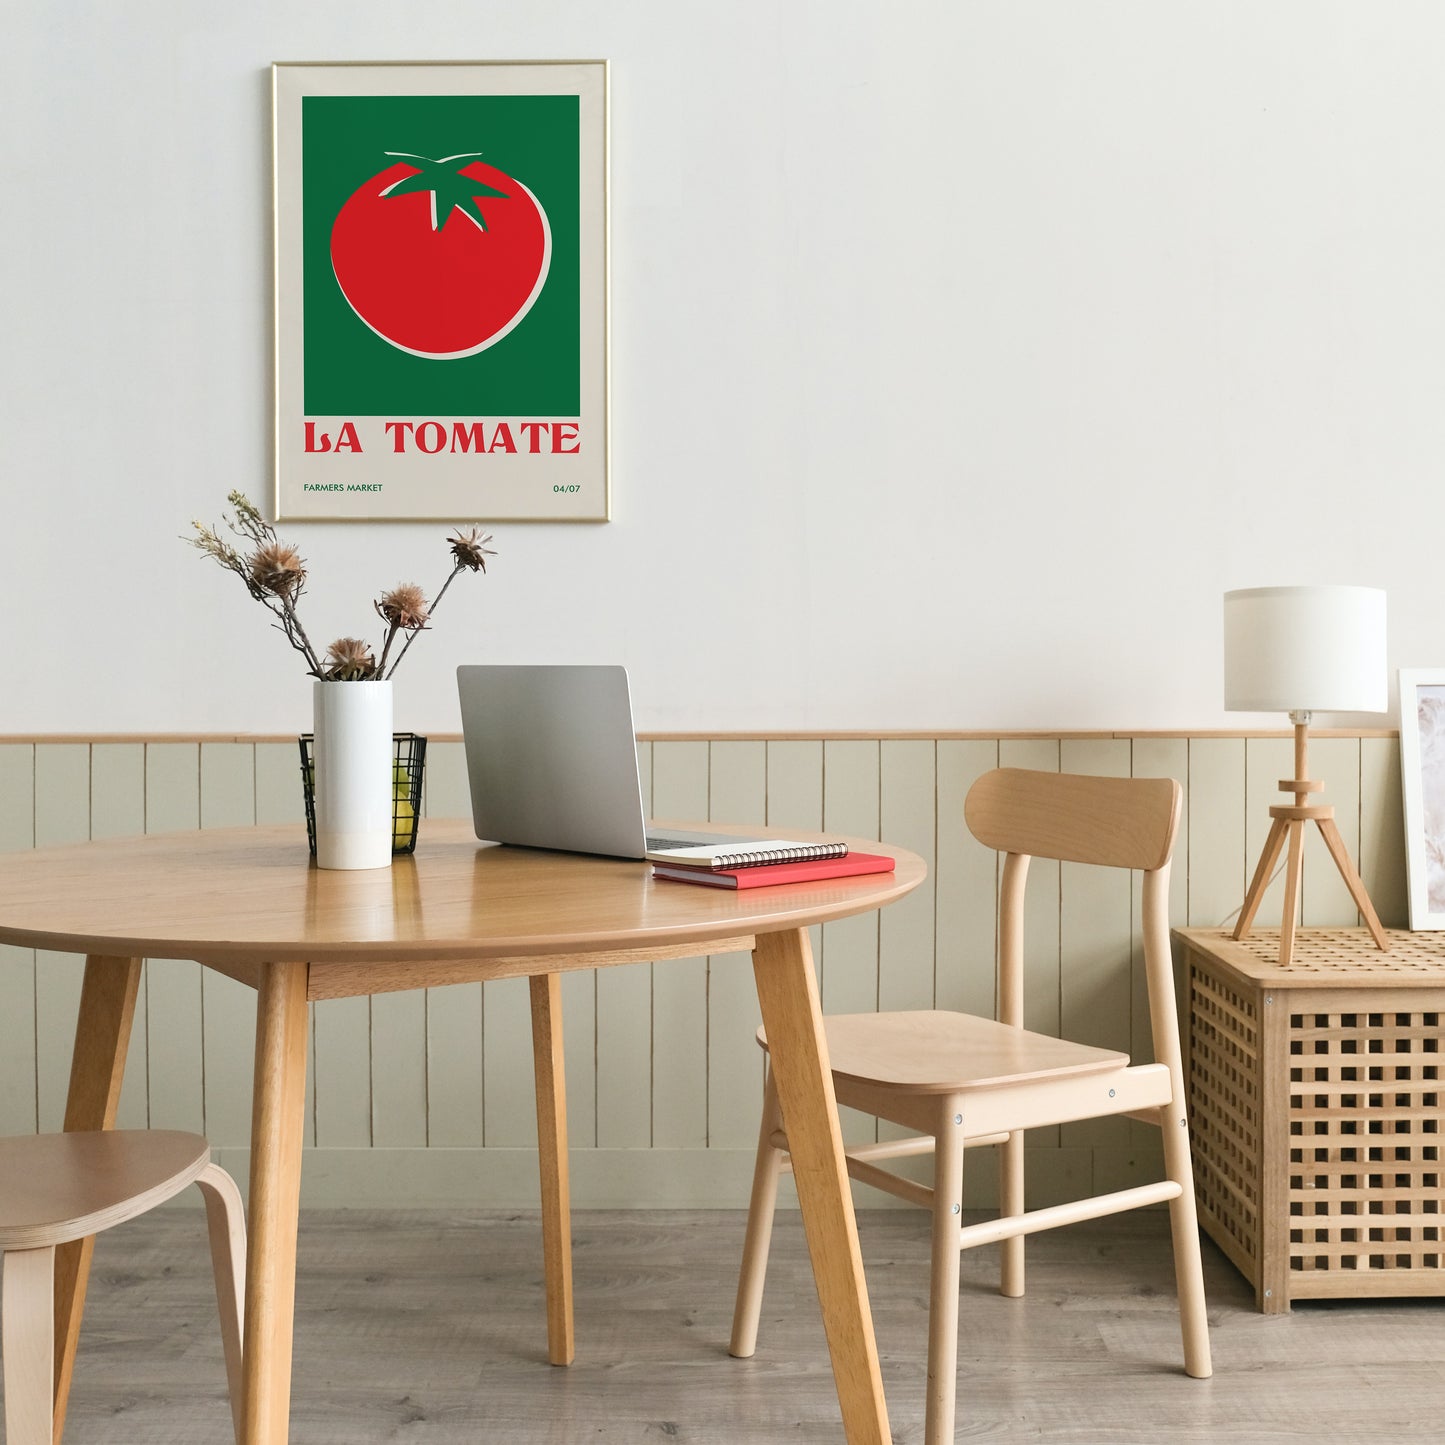 La Tomate Tomato Retro French Poster